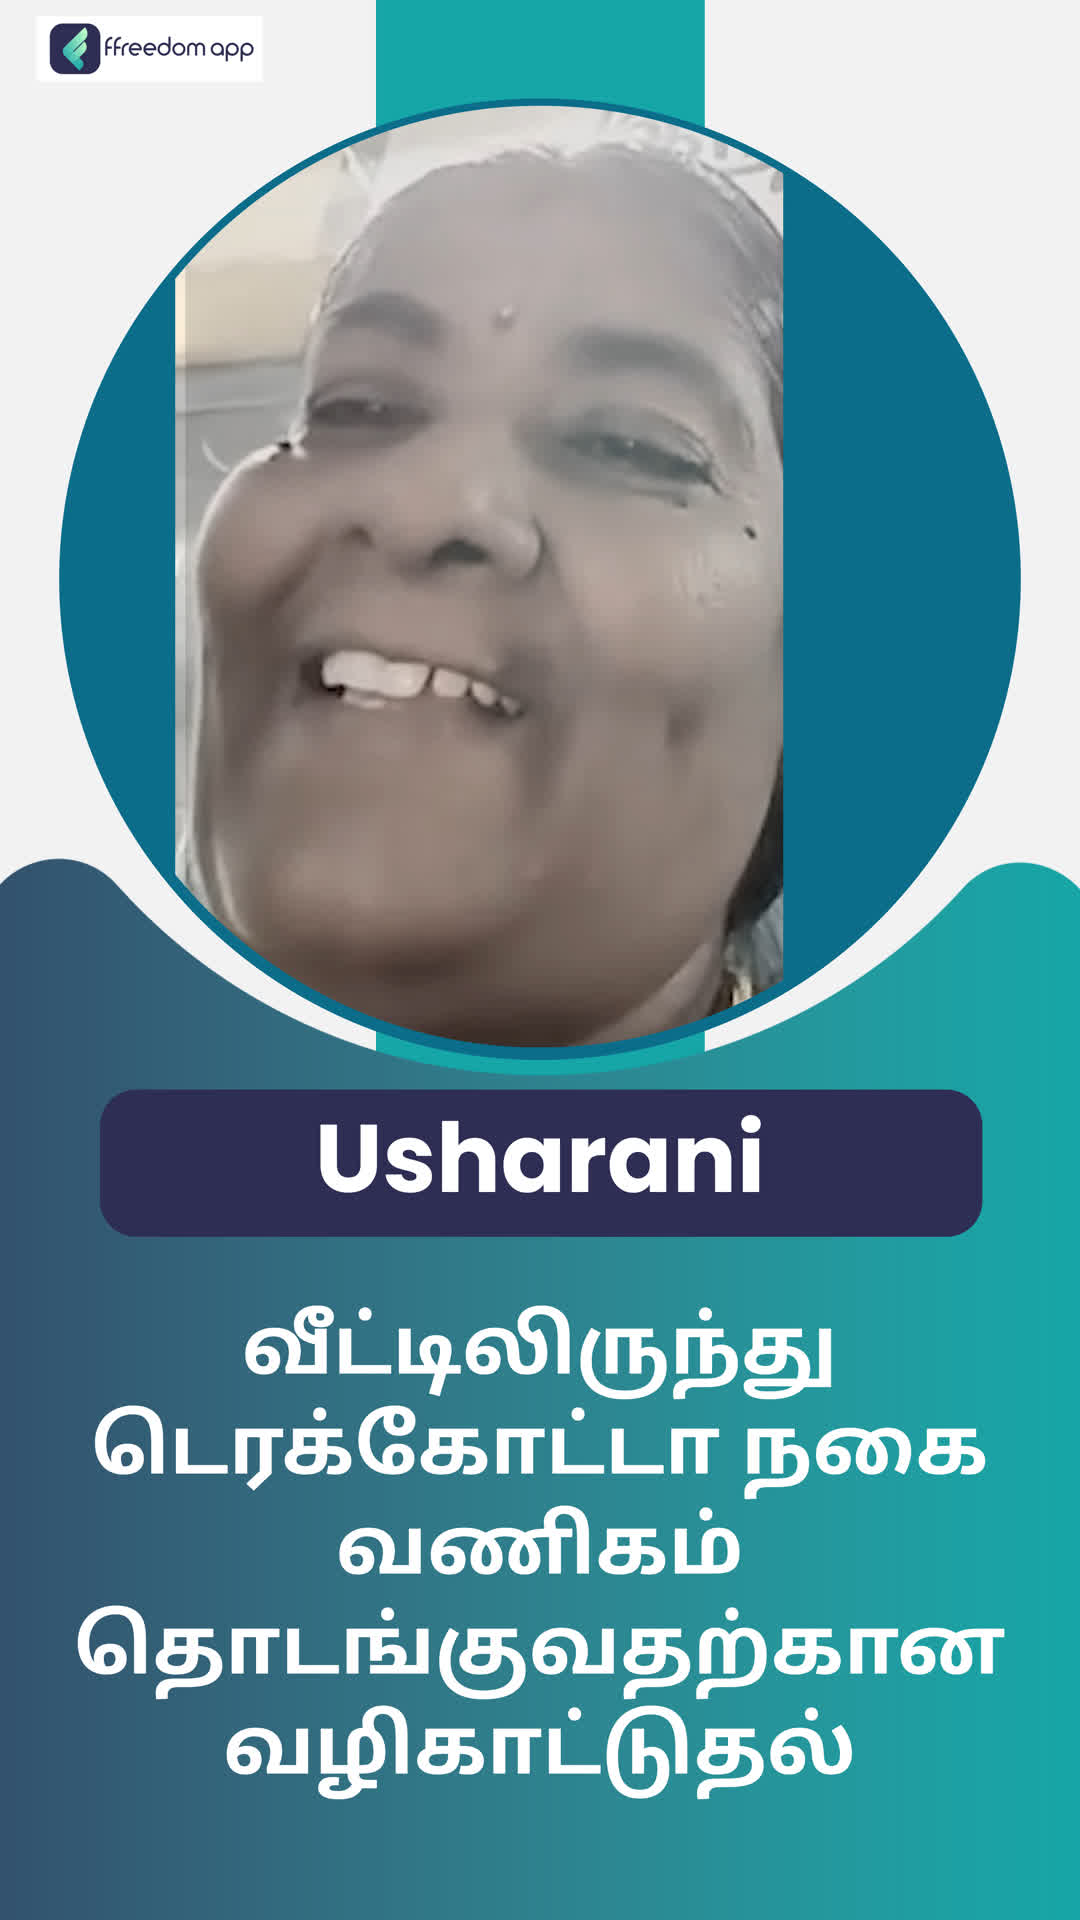 Usharani's Honest Review of ffreedom app - Virudhunagar ,Tamil Nadu